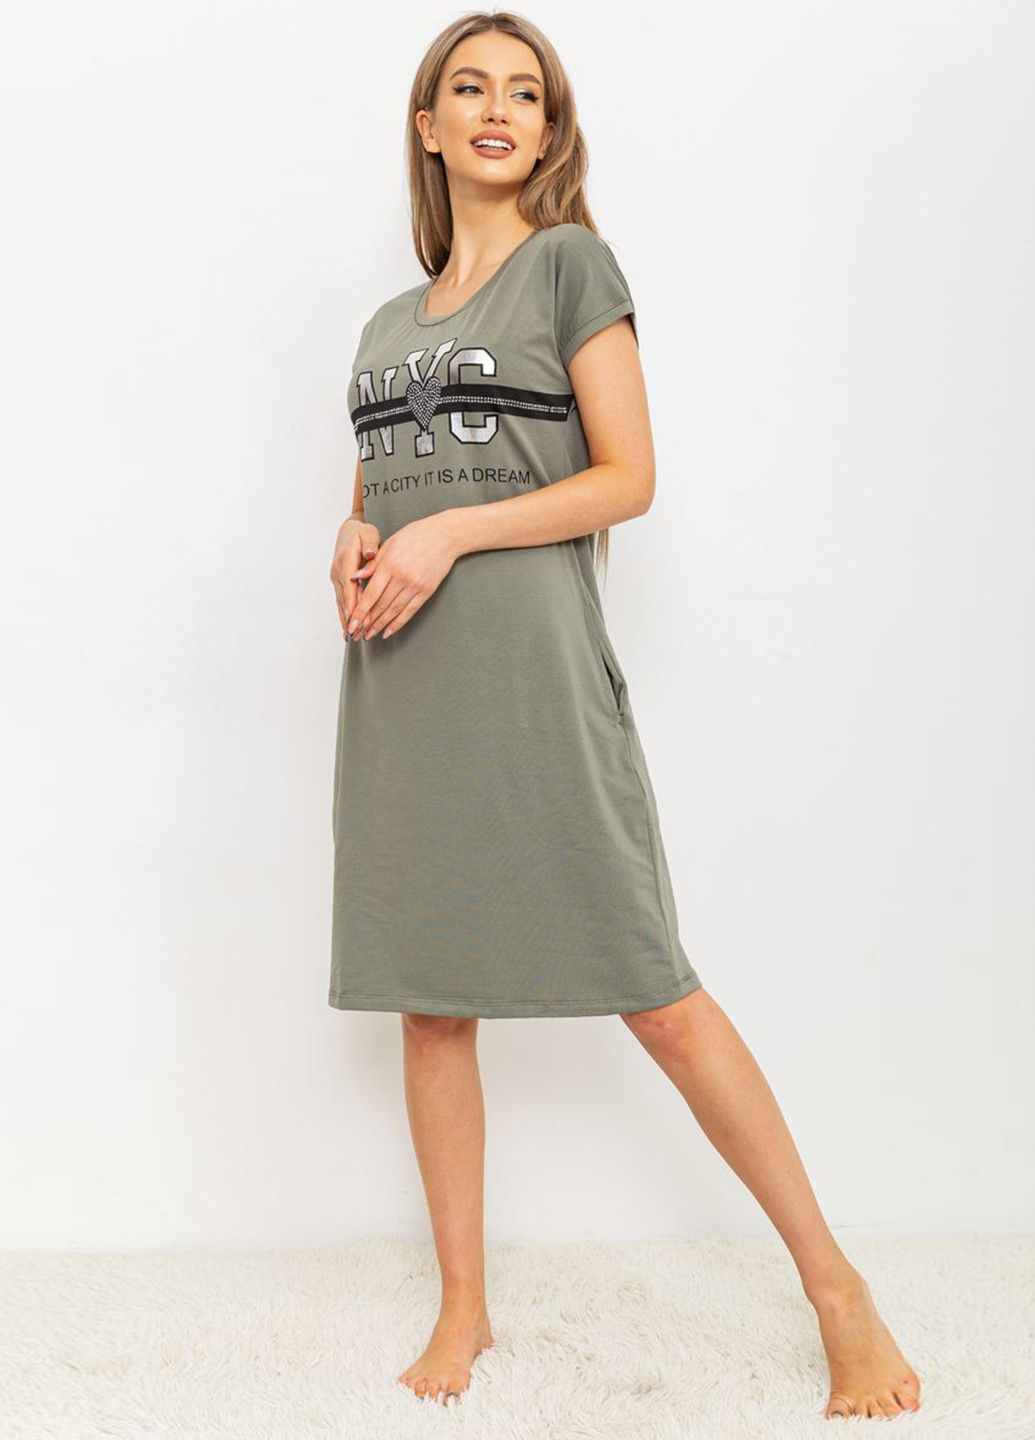 Оливковое домашнее платье платье-футболка Ager с надписью